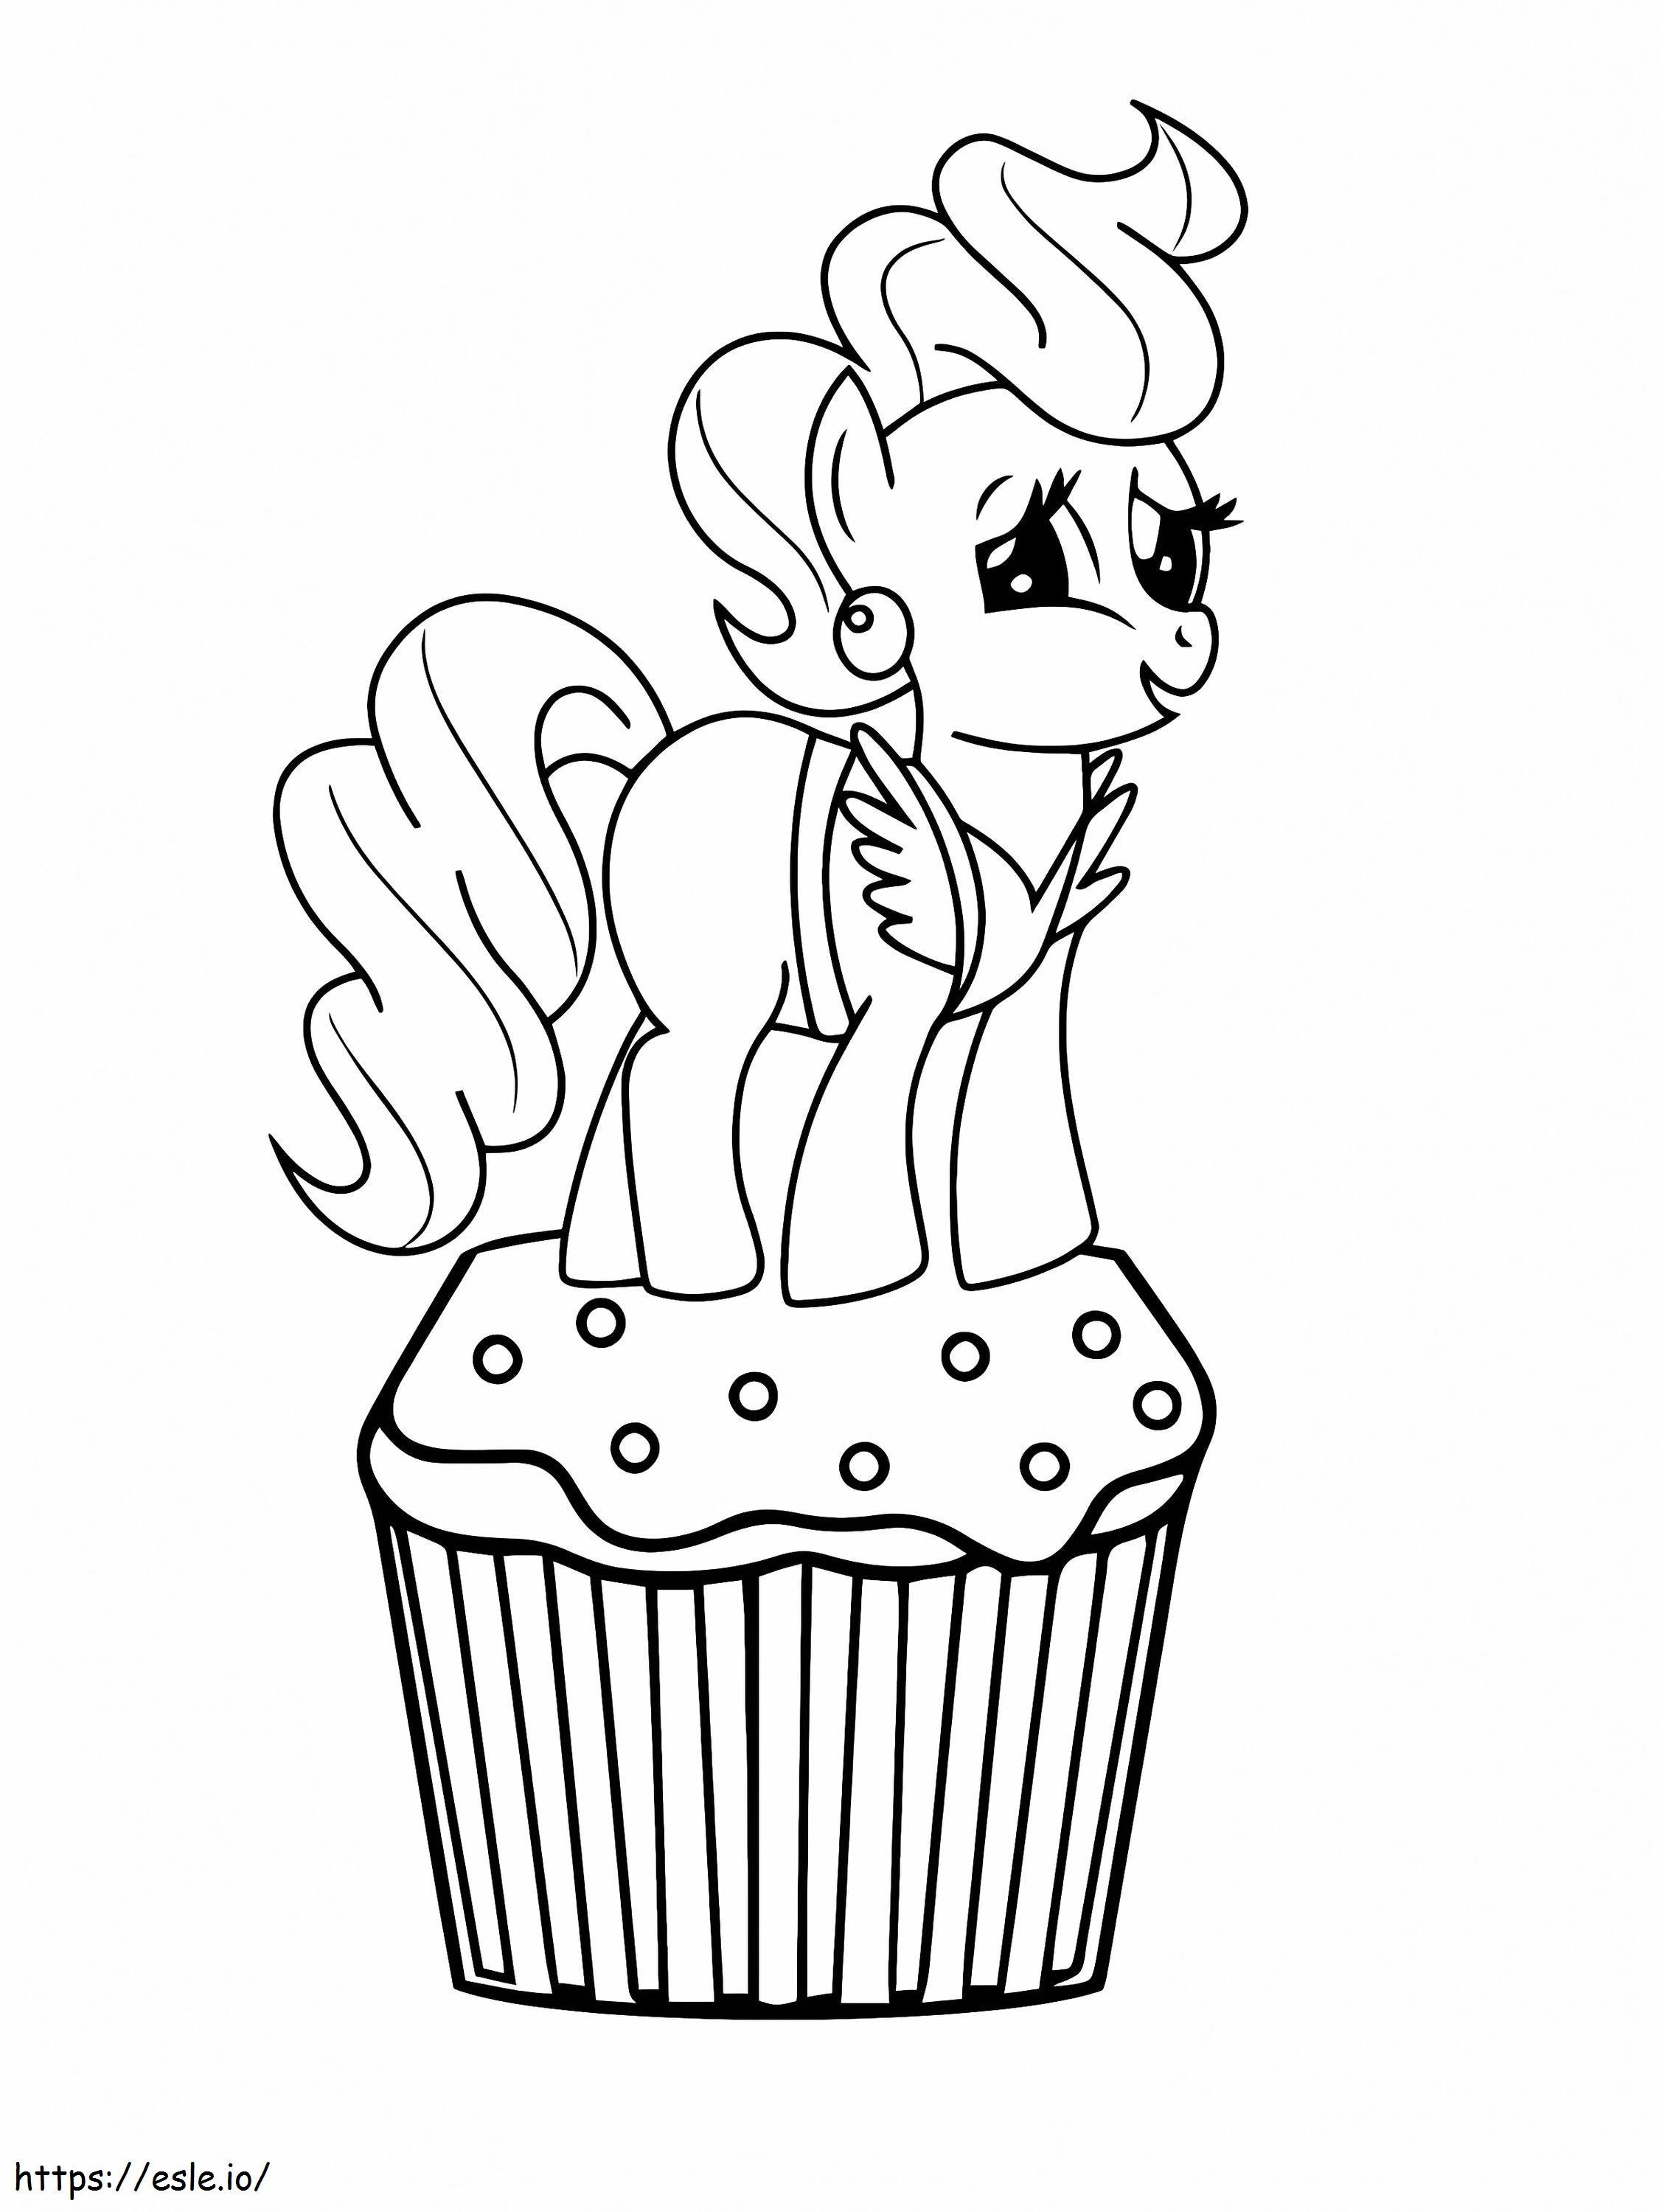 Sra Bolo No Topo Do Cupcake Em My Little Pony para colorir